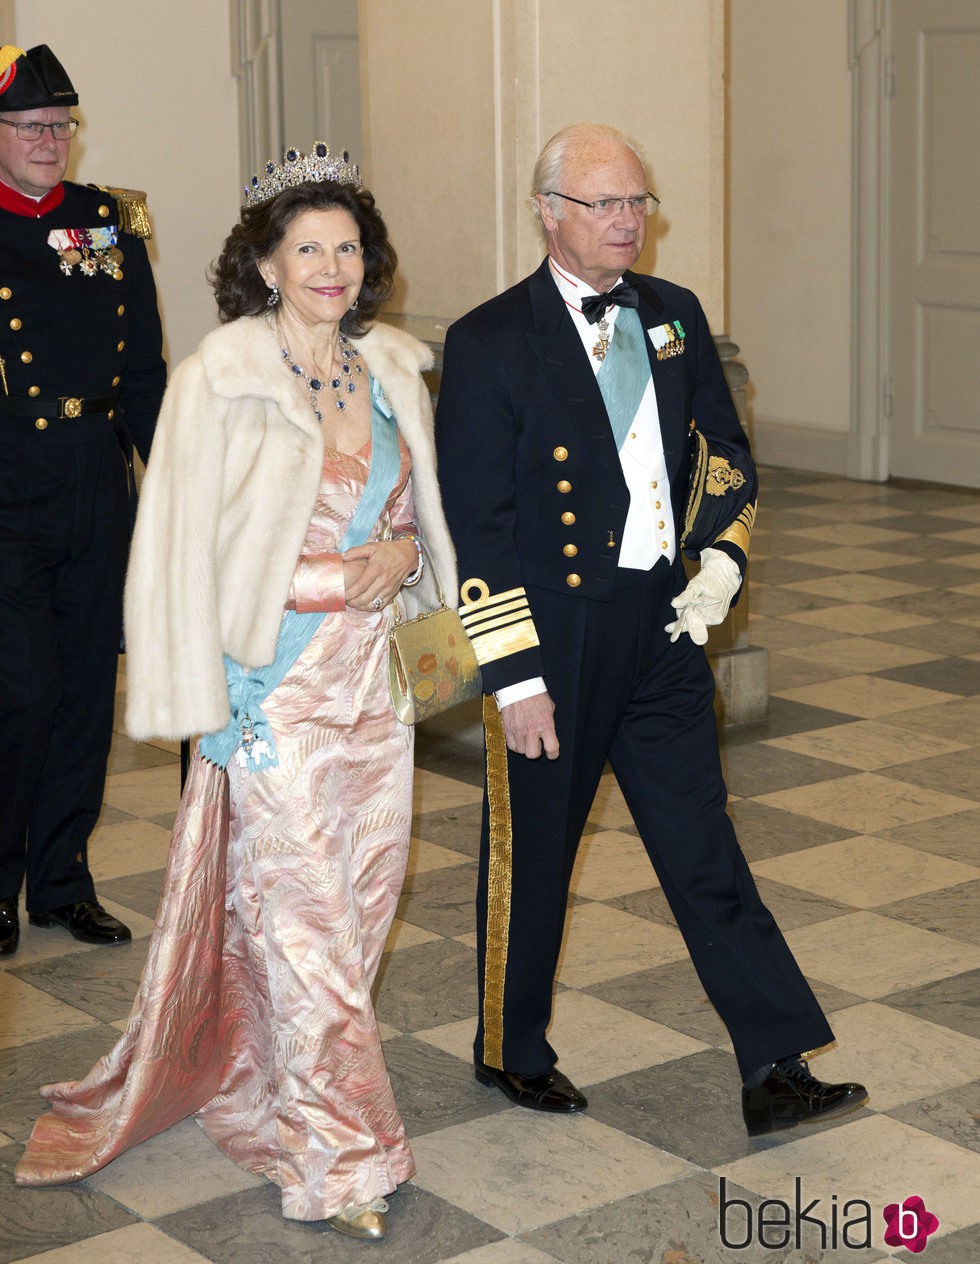 La reina Silvia de Suecia con un vestido estampado en color rosa